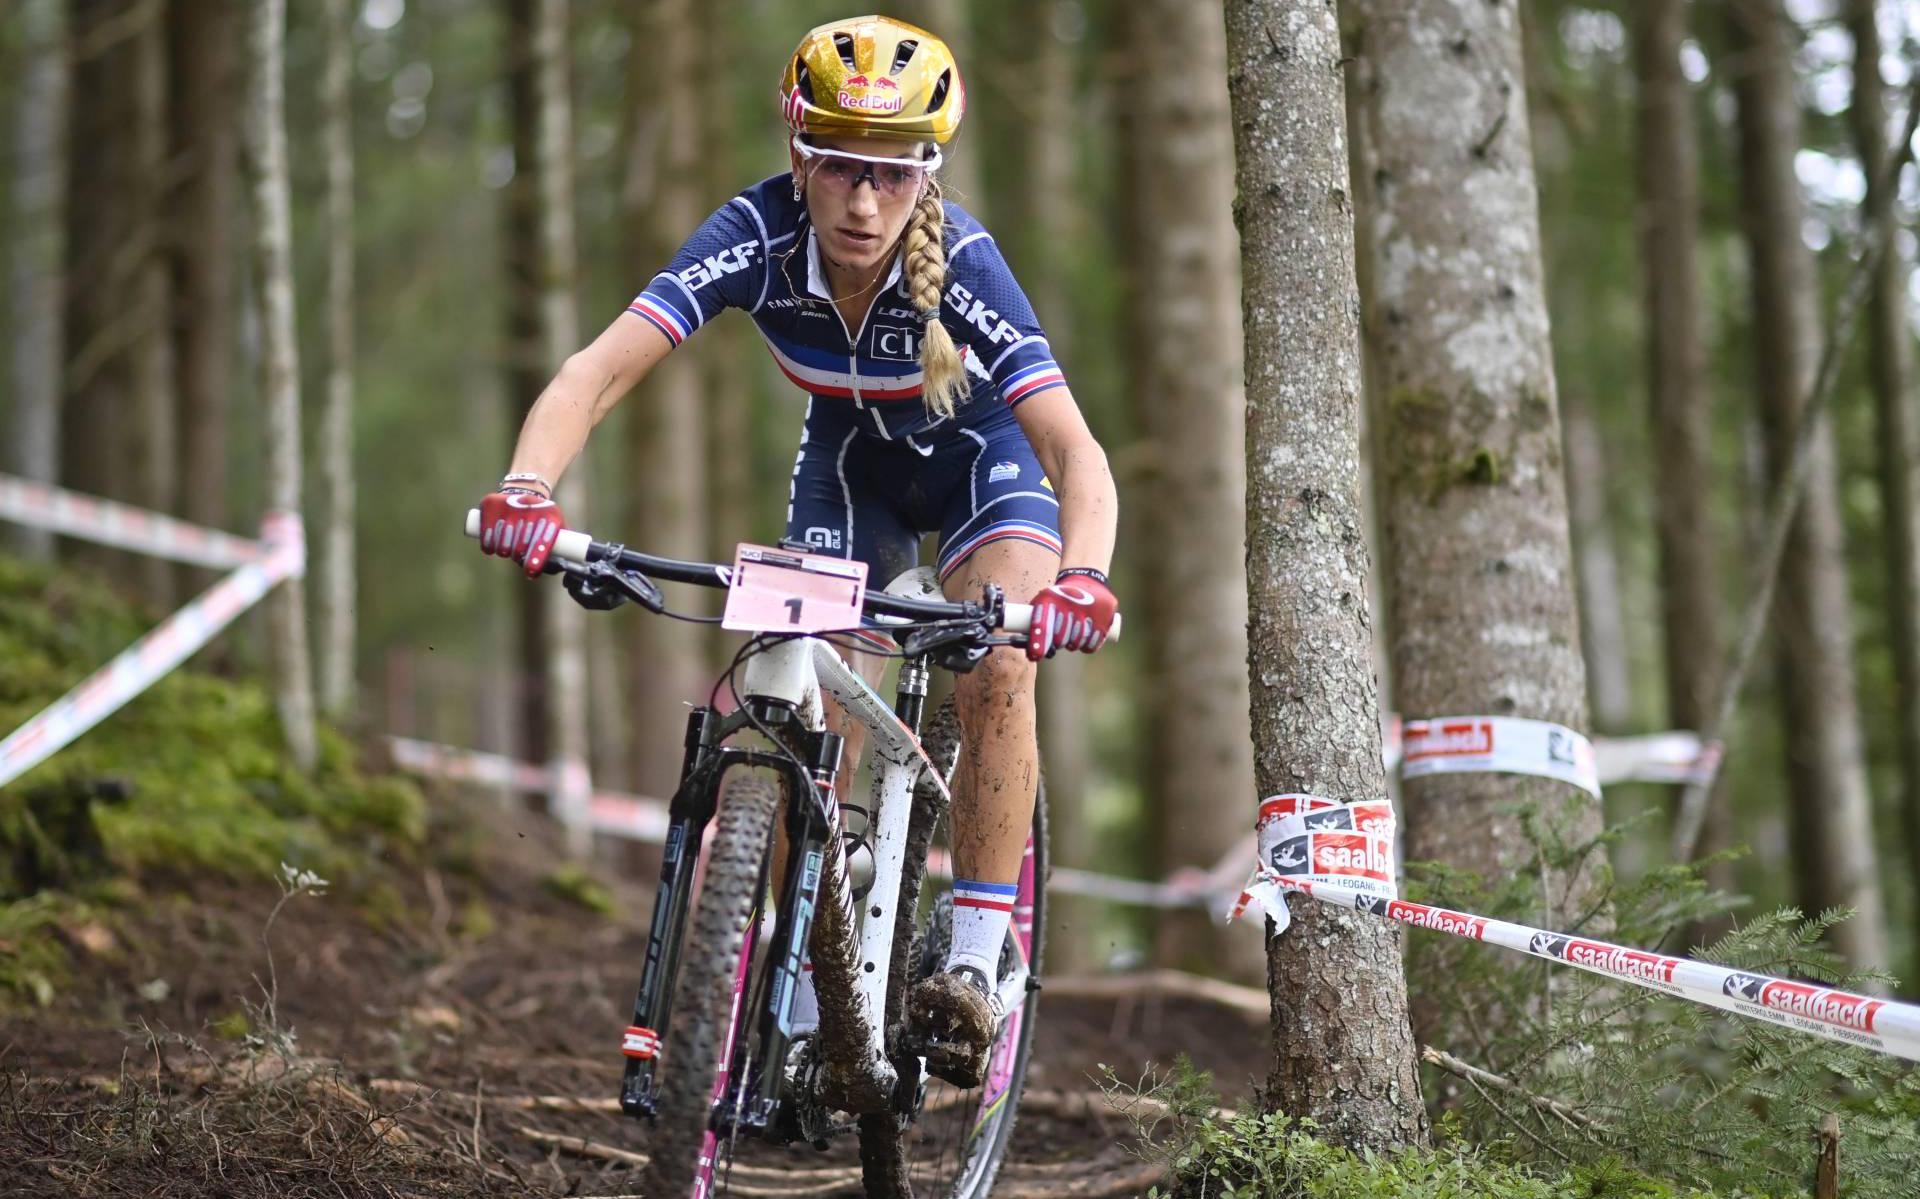 Ferrand-Prévot rijdt onbedreigd naar titel op WK mountainbike